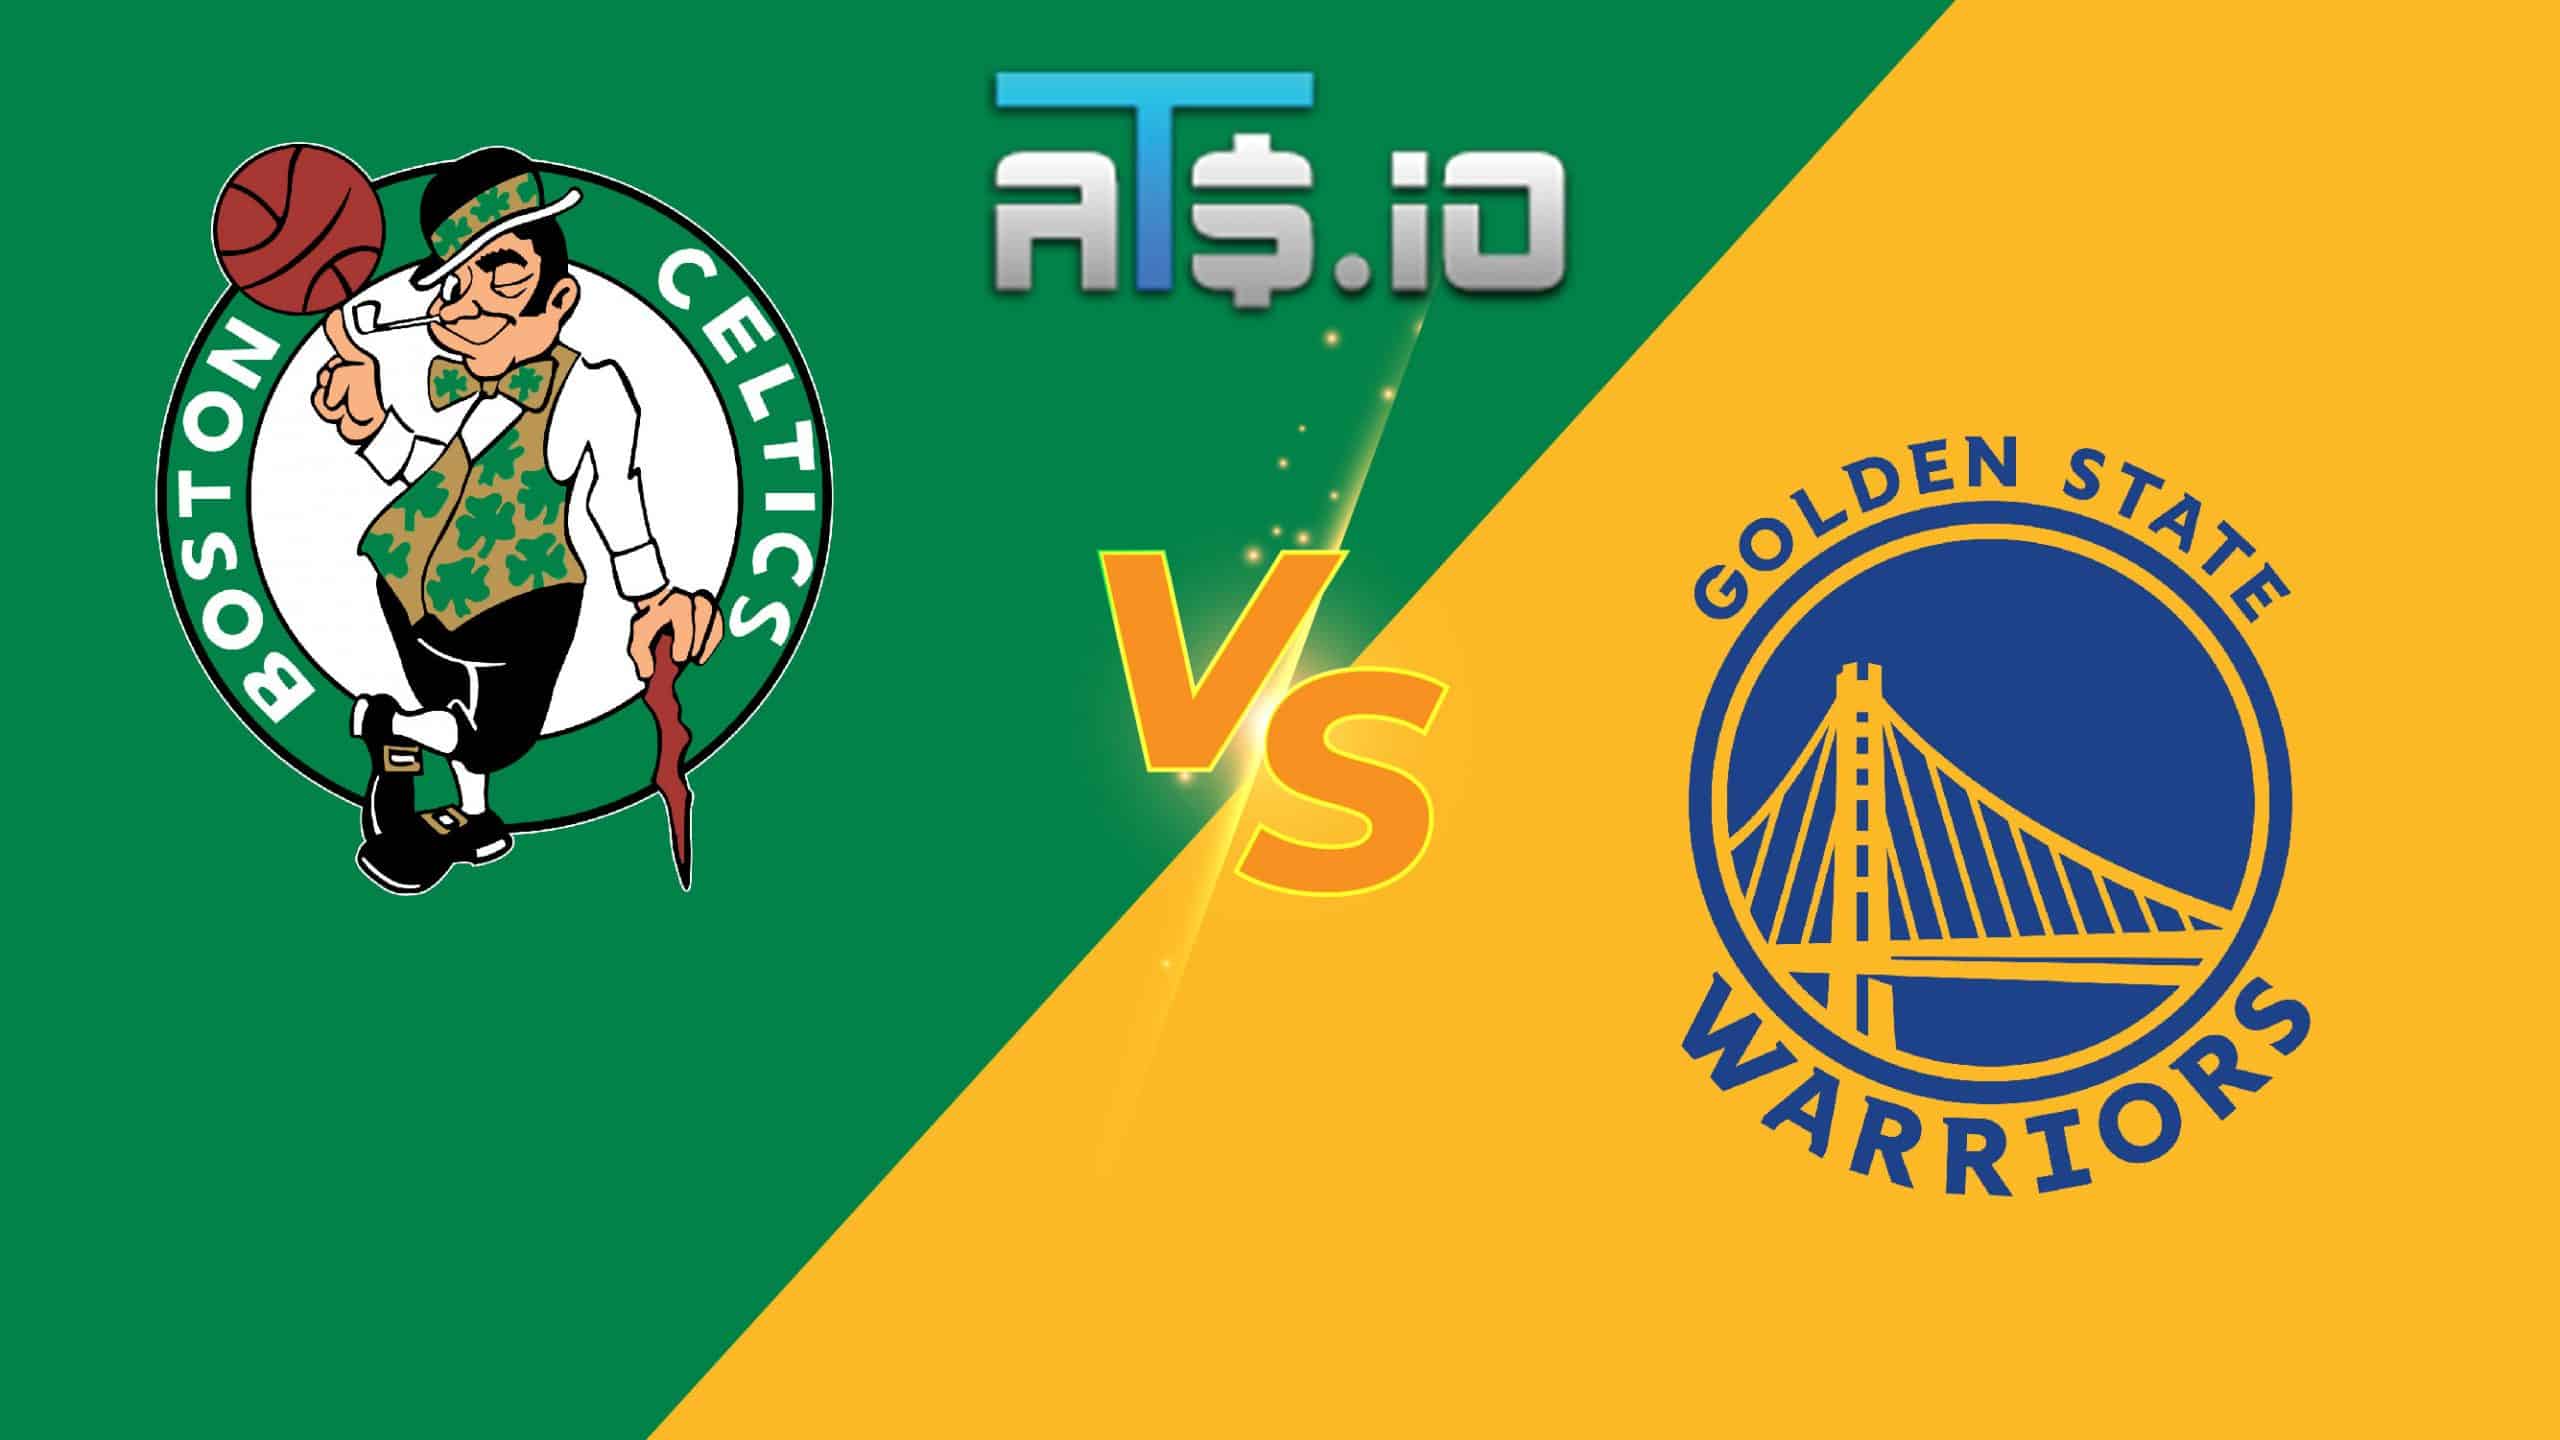 Boston Celtics vs Golden State Warriors NBA Finals Game 2 Pick 6/5/22